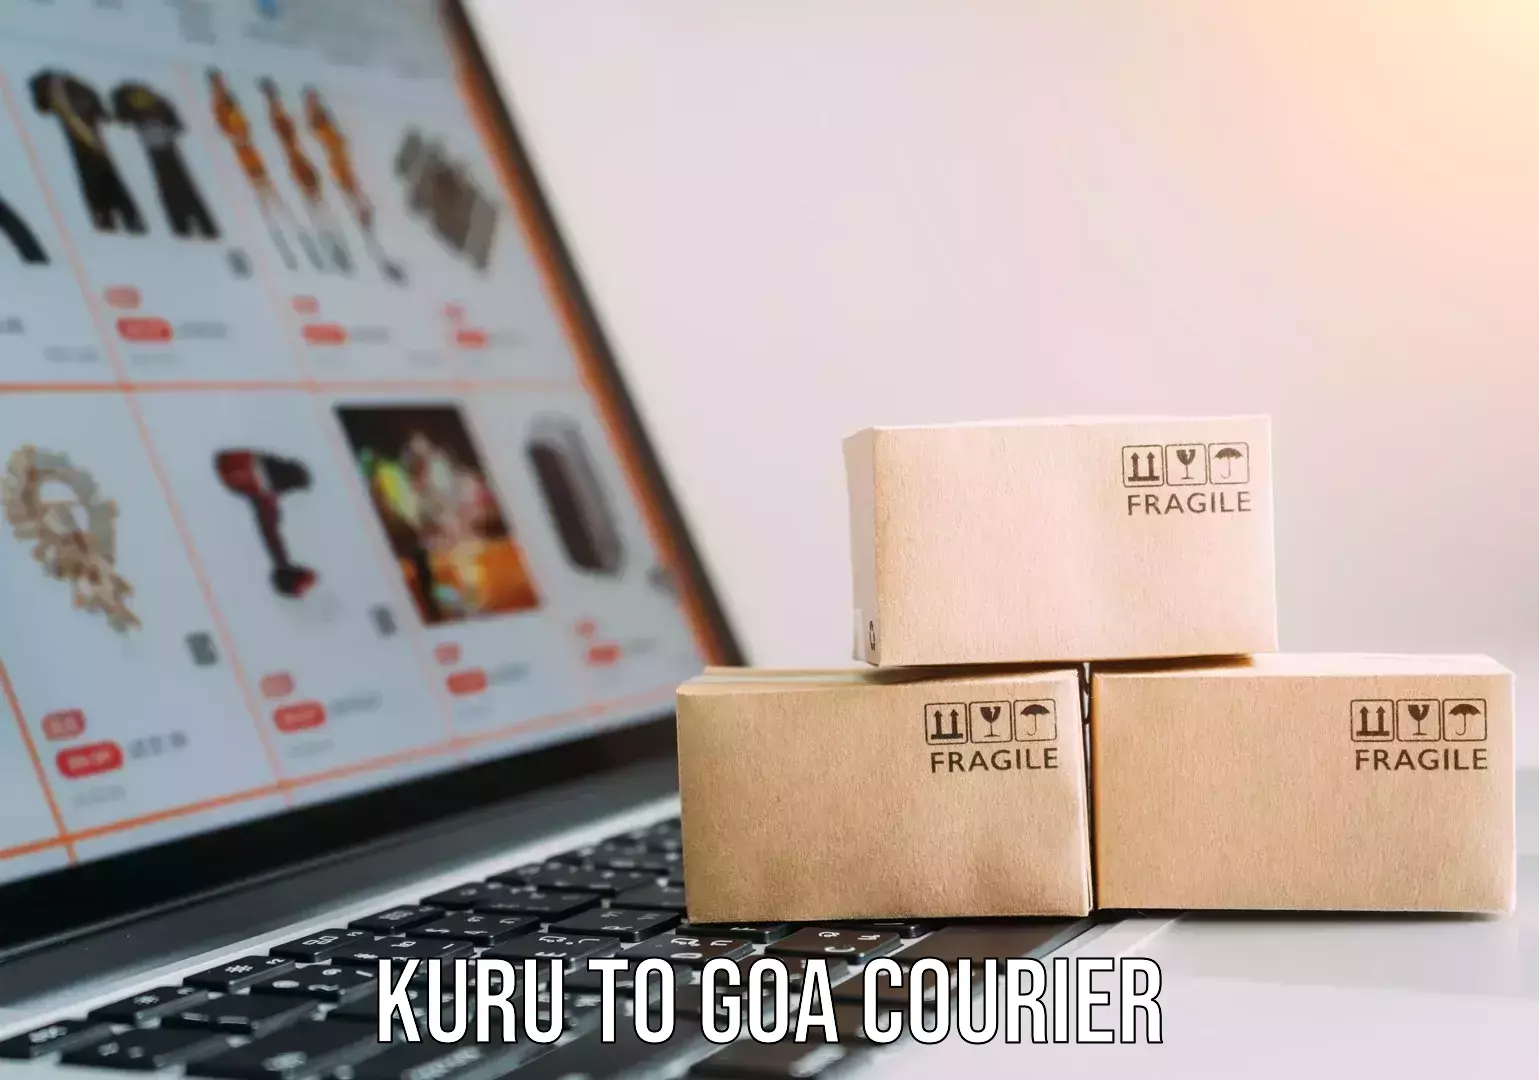 Professional packing services Kuru to Goa